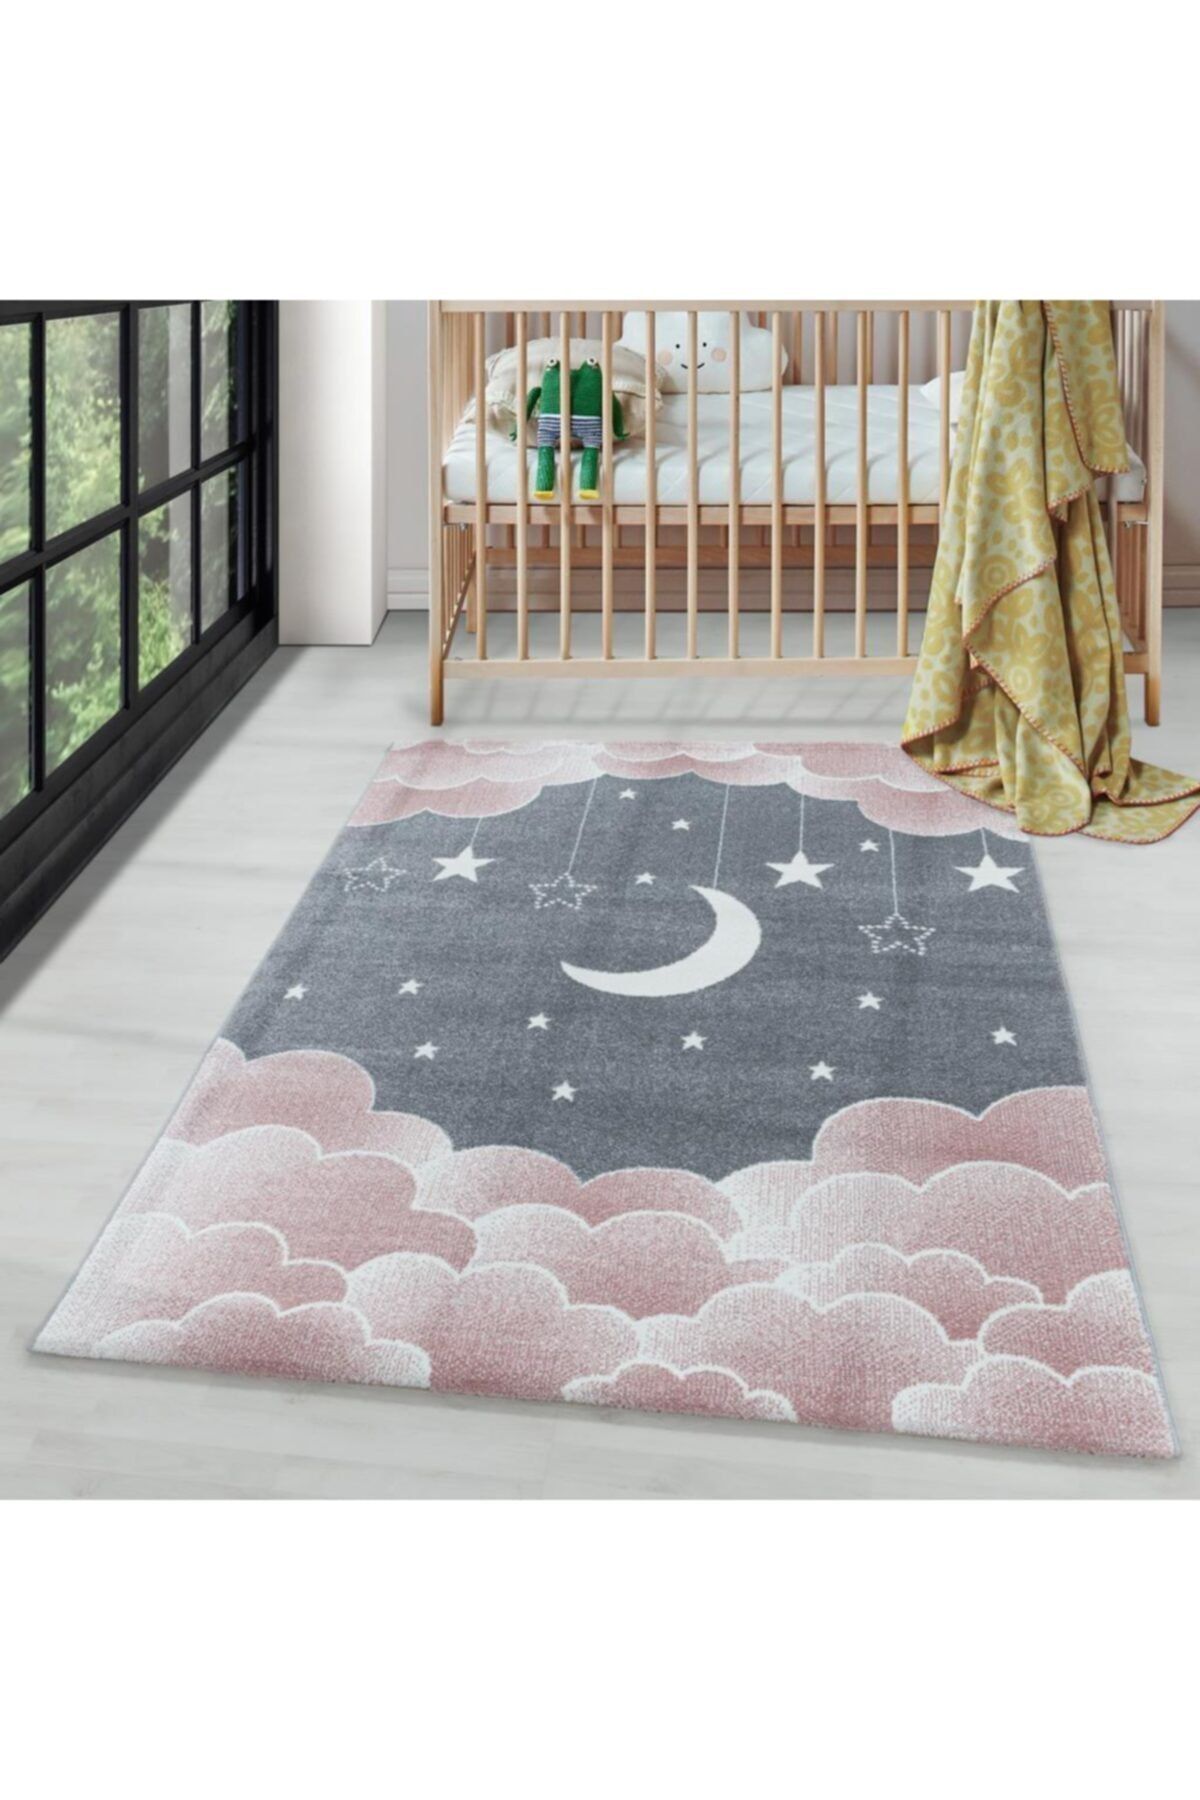 Genel Markalar Çocuk Bebek Odası Halısı Bulut Ay Yıldız Desenli Pembe Gri Tonlarda